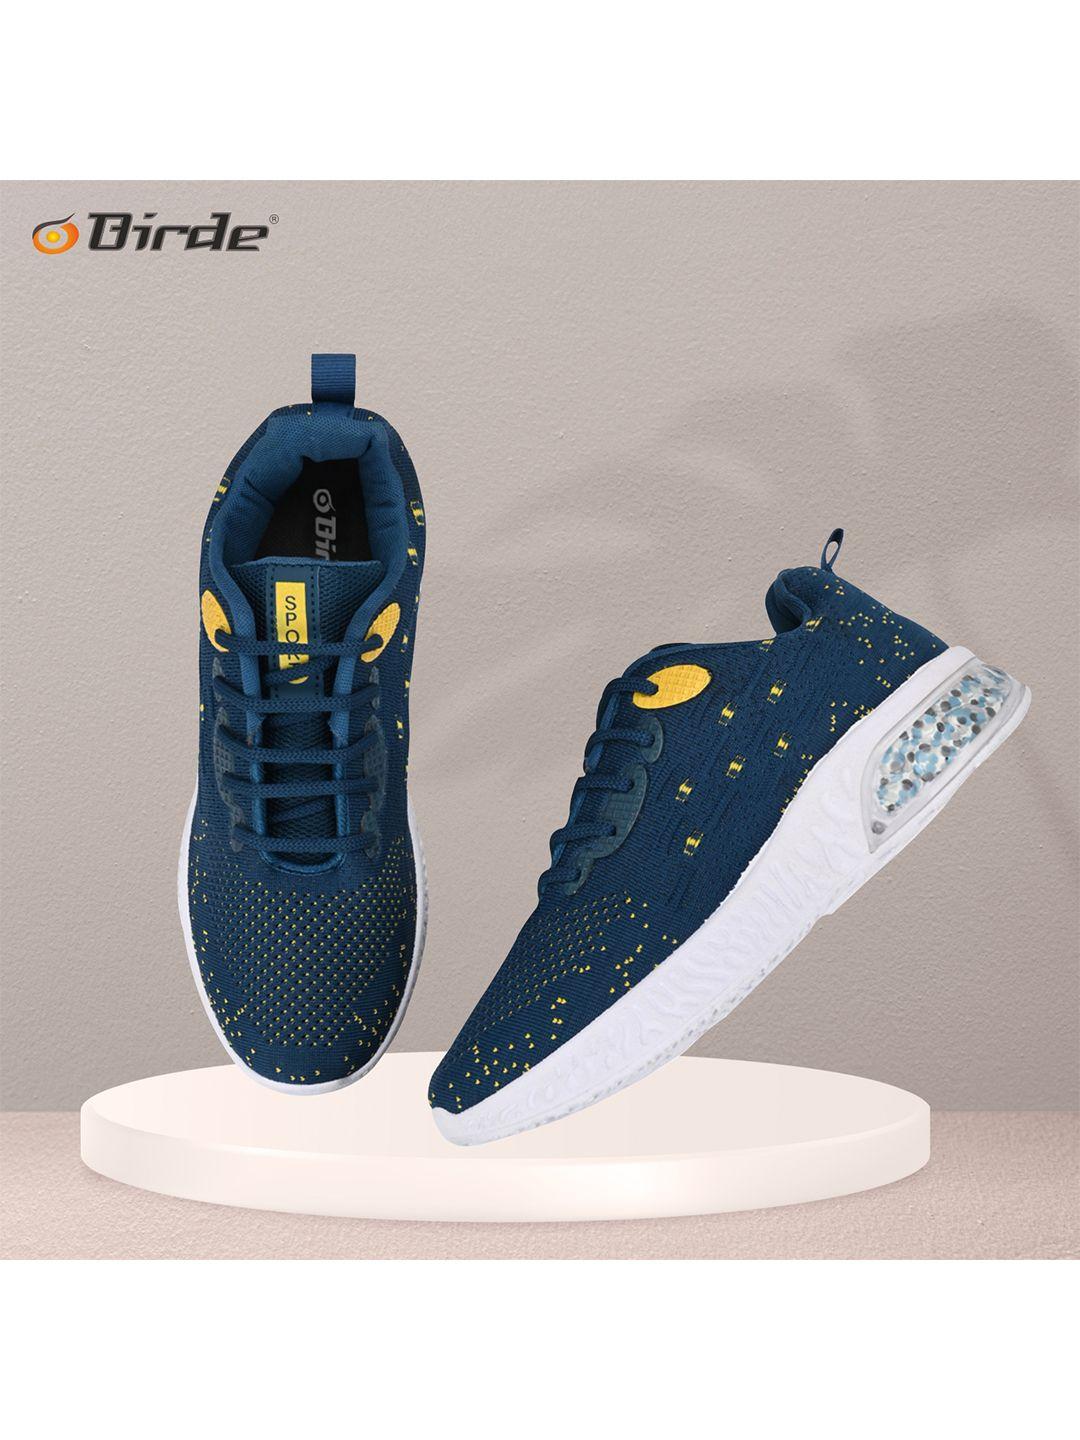 birde men blue printed sneakers